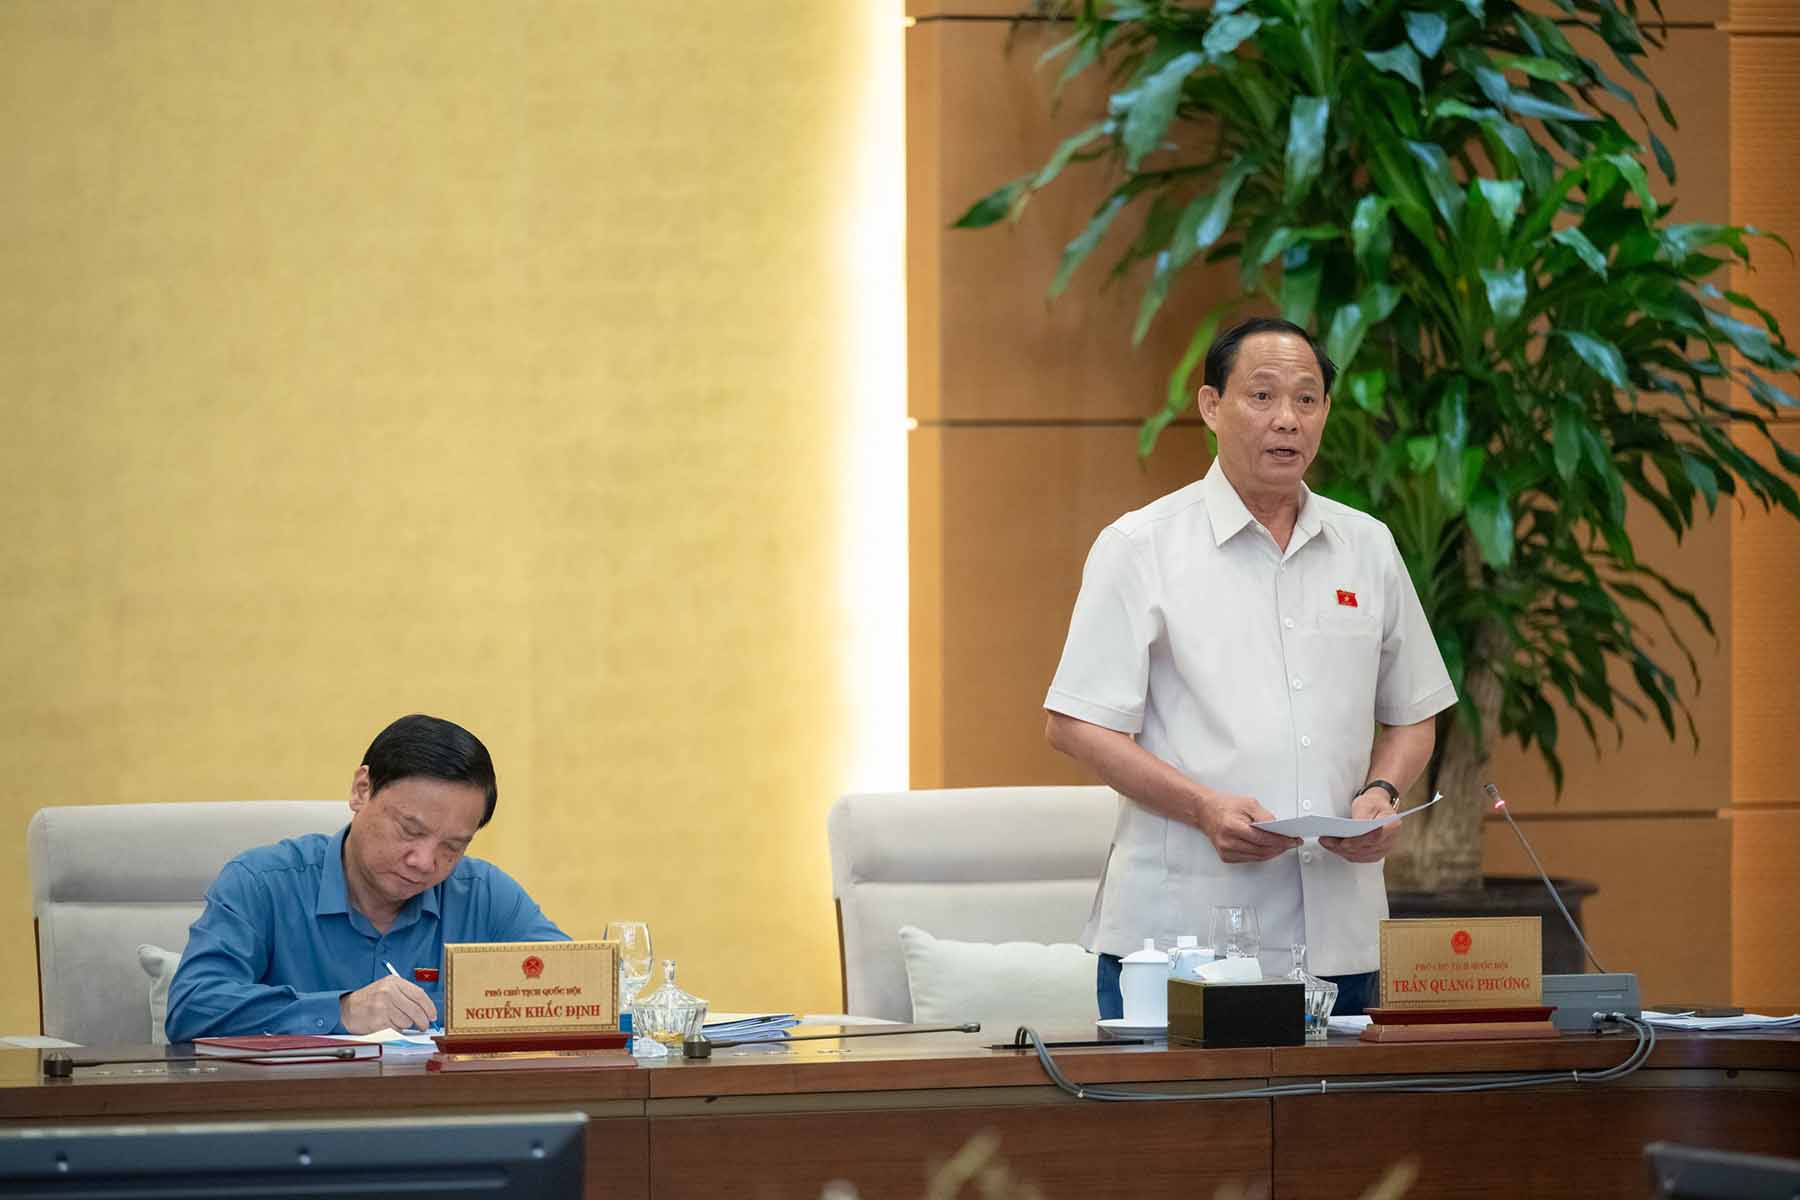 Phó Chủ tịch Quốc hội Trần Quang Phương phát biểu tại phiên họp. Ảnh: Phạm Đông